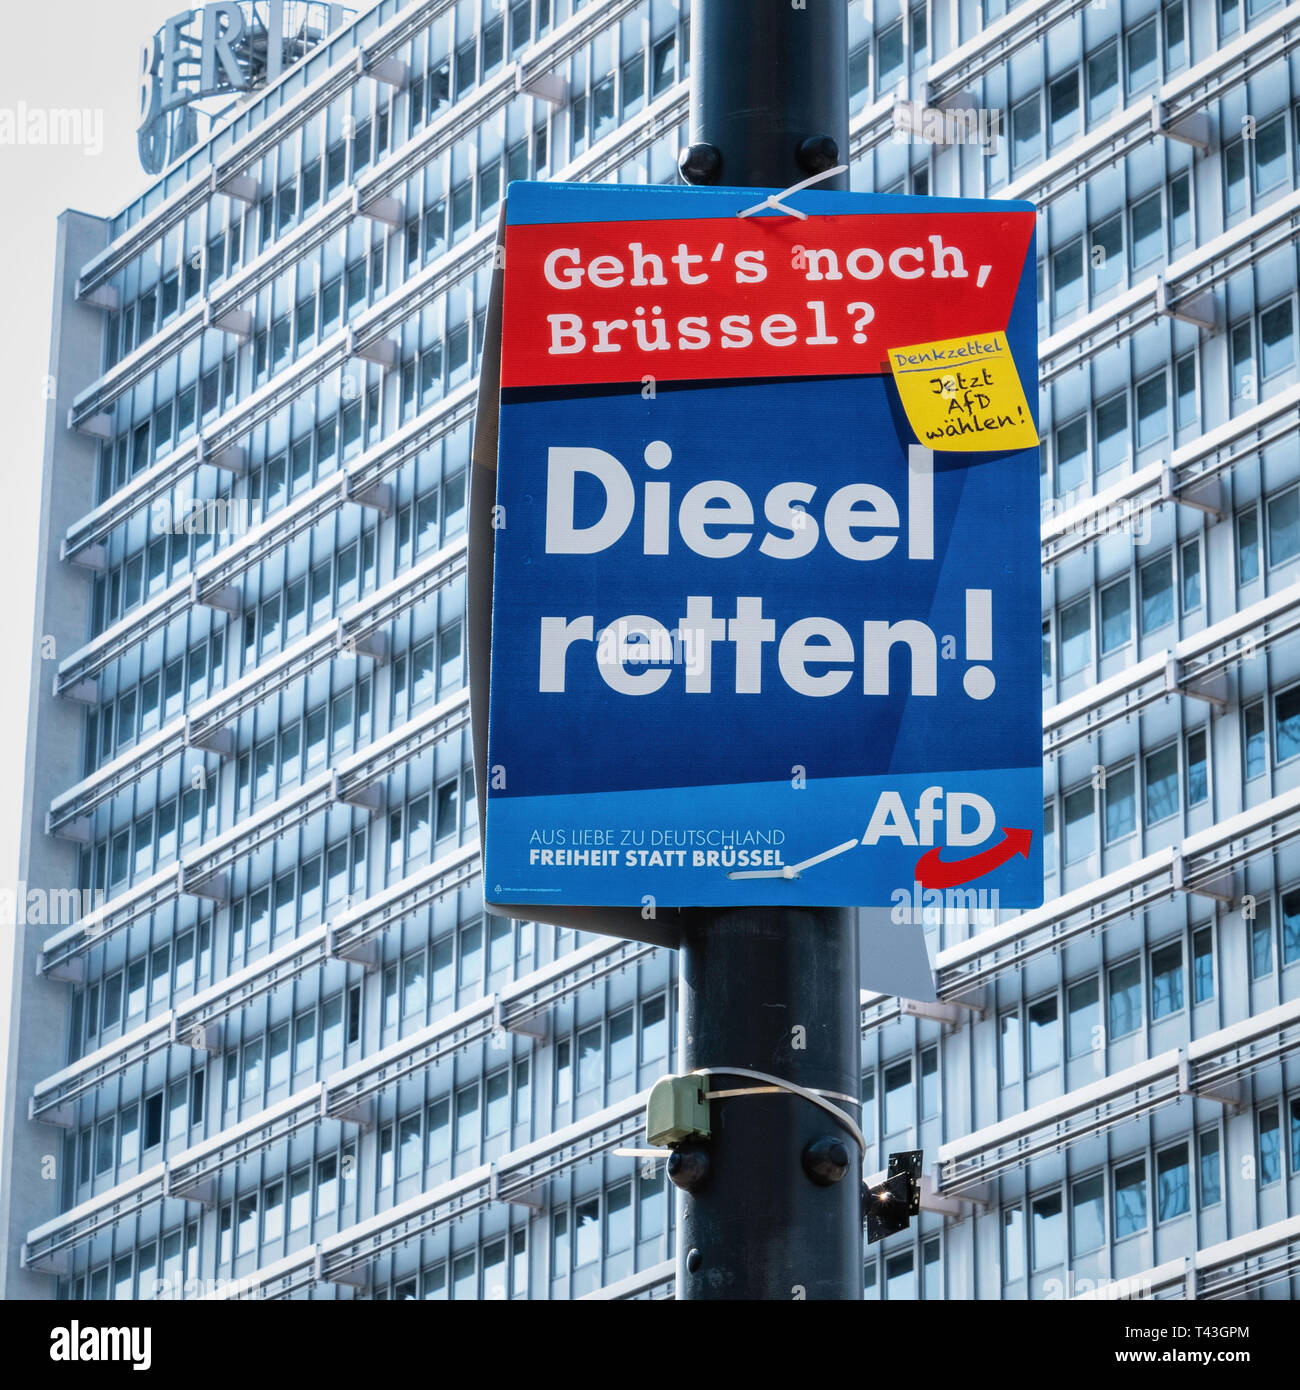 Berlin. Affiche électorale, Élections européennes 23 au 26 mai 2019, l'AfD soutient l'affiche l'utilisation de diesel. Parti de droite veut sauver le Diesel Banque D'Images